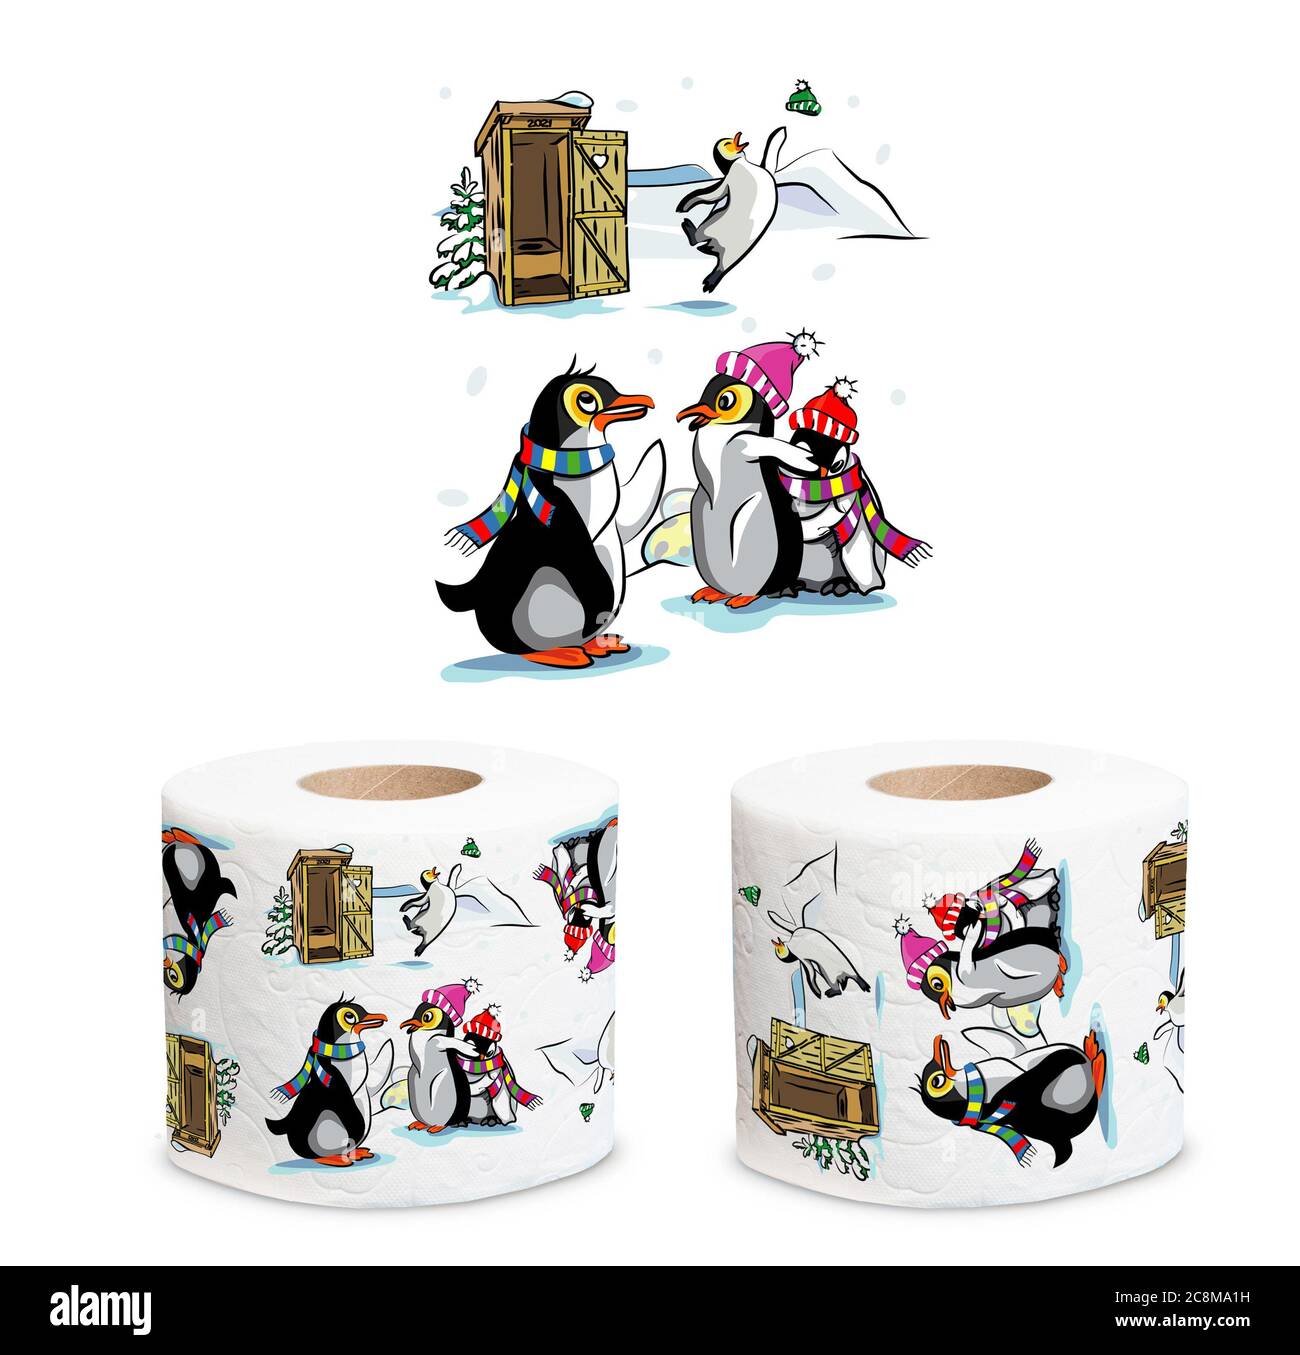 Un groupe de pingouins près de l'arbre de Noël et des toilettes en bois dans un village., illustration Banque D'Images